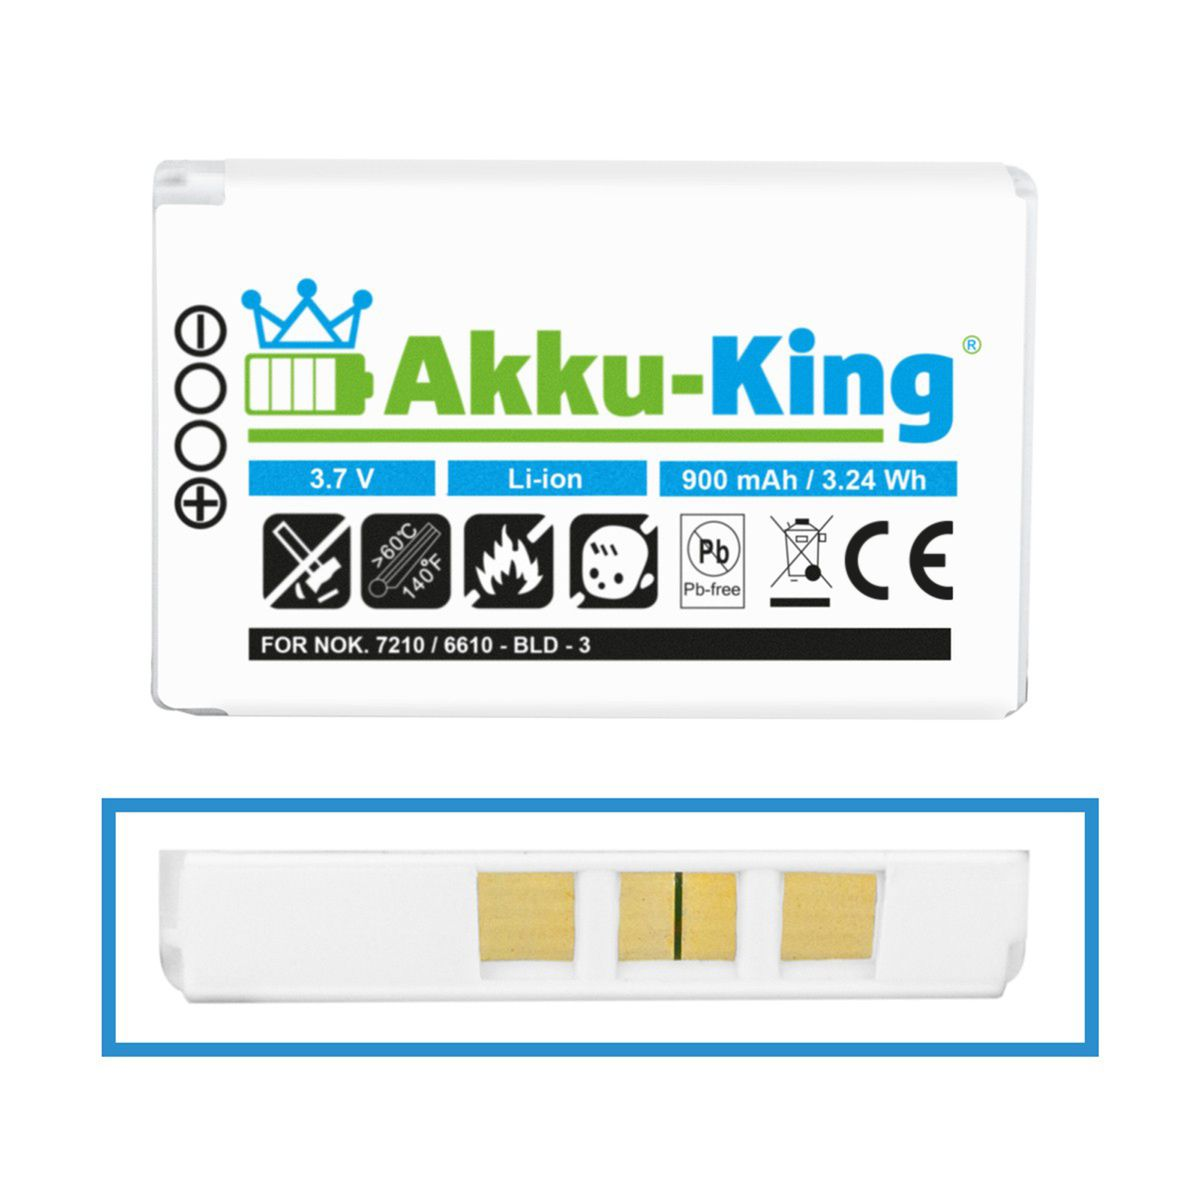 AKKU-KING Akku kompatibel mit Handy-Akku, BLD-3 Nokia Volt, 900mAh Li-Ion 3.6